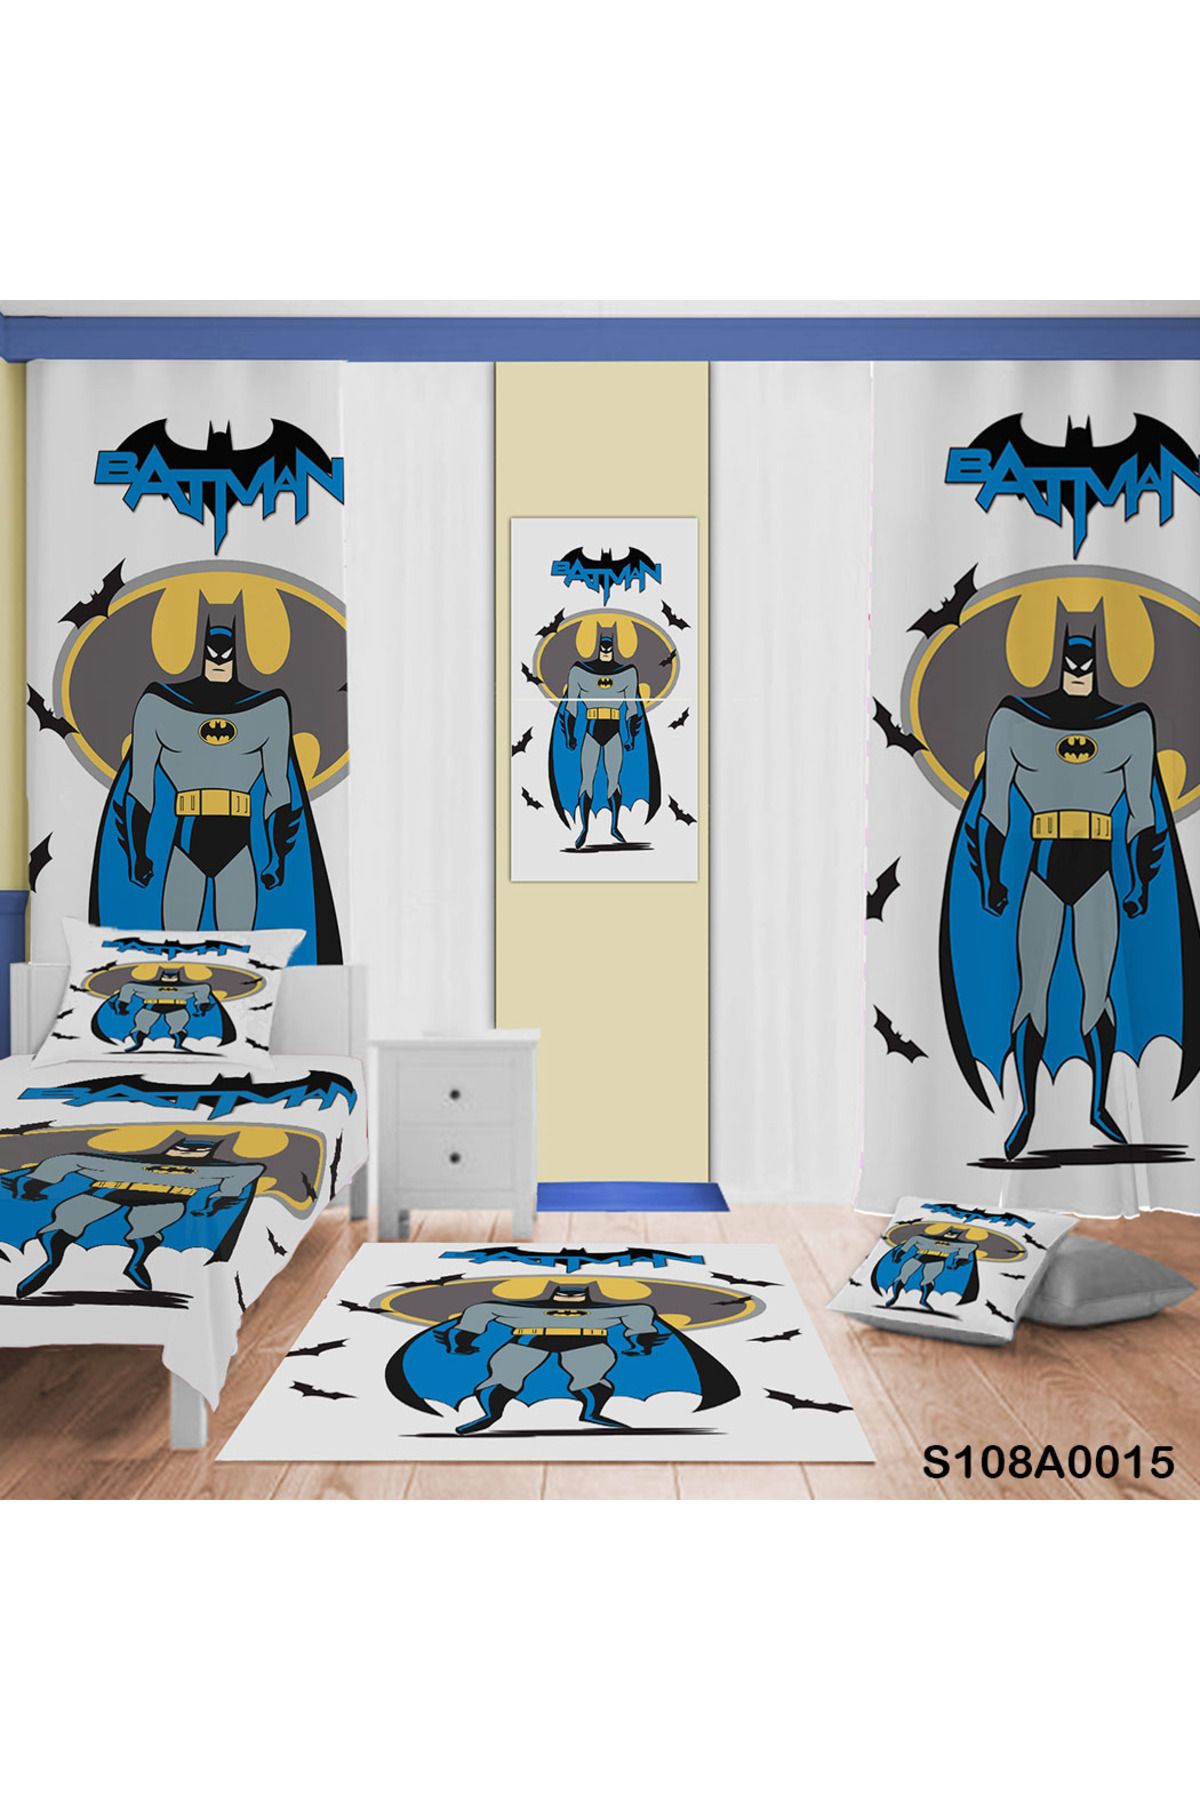 A2ZTR Batman Desenli Yatak Örtüsü, Perde Çift Taraf, Yastık, Kırlent Kılıfı , Halı Ve Tablo